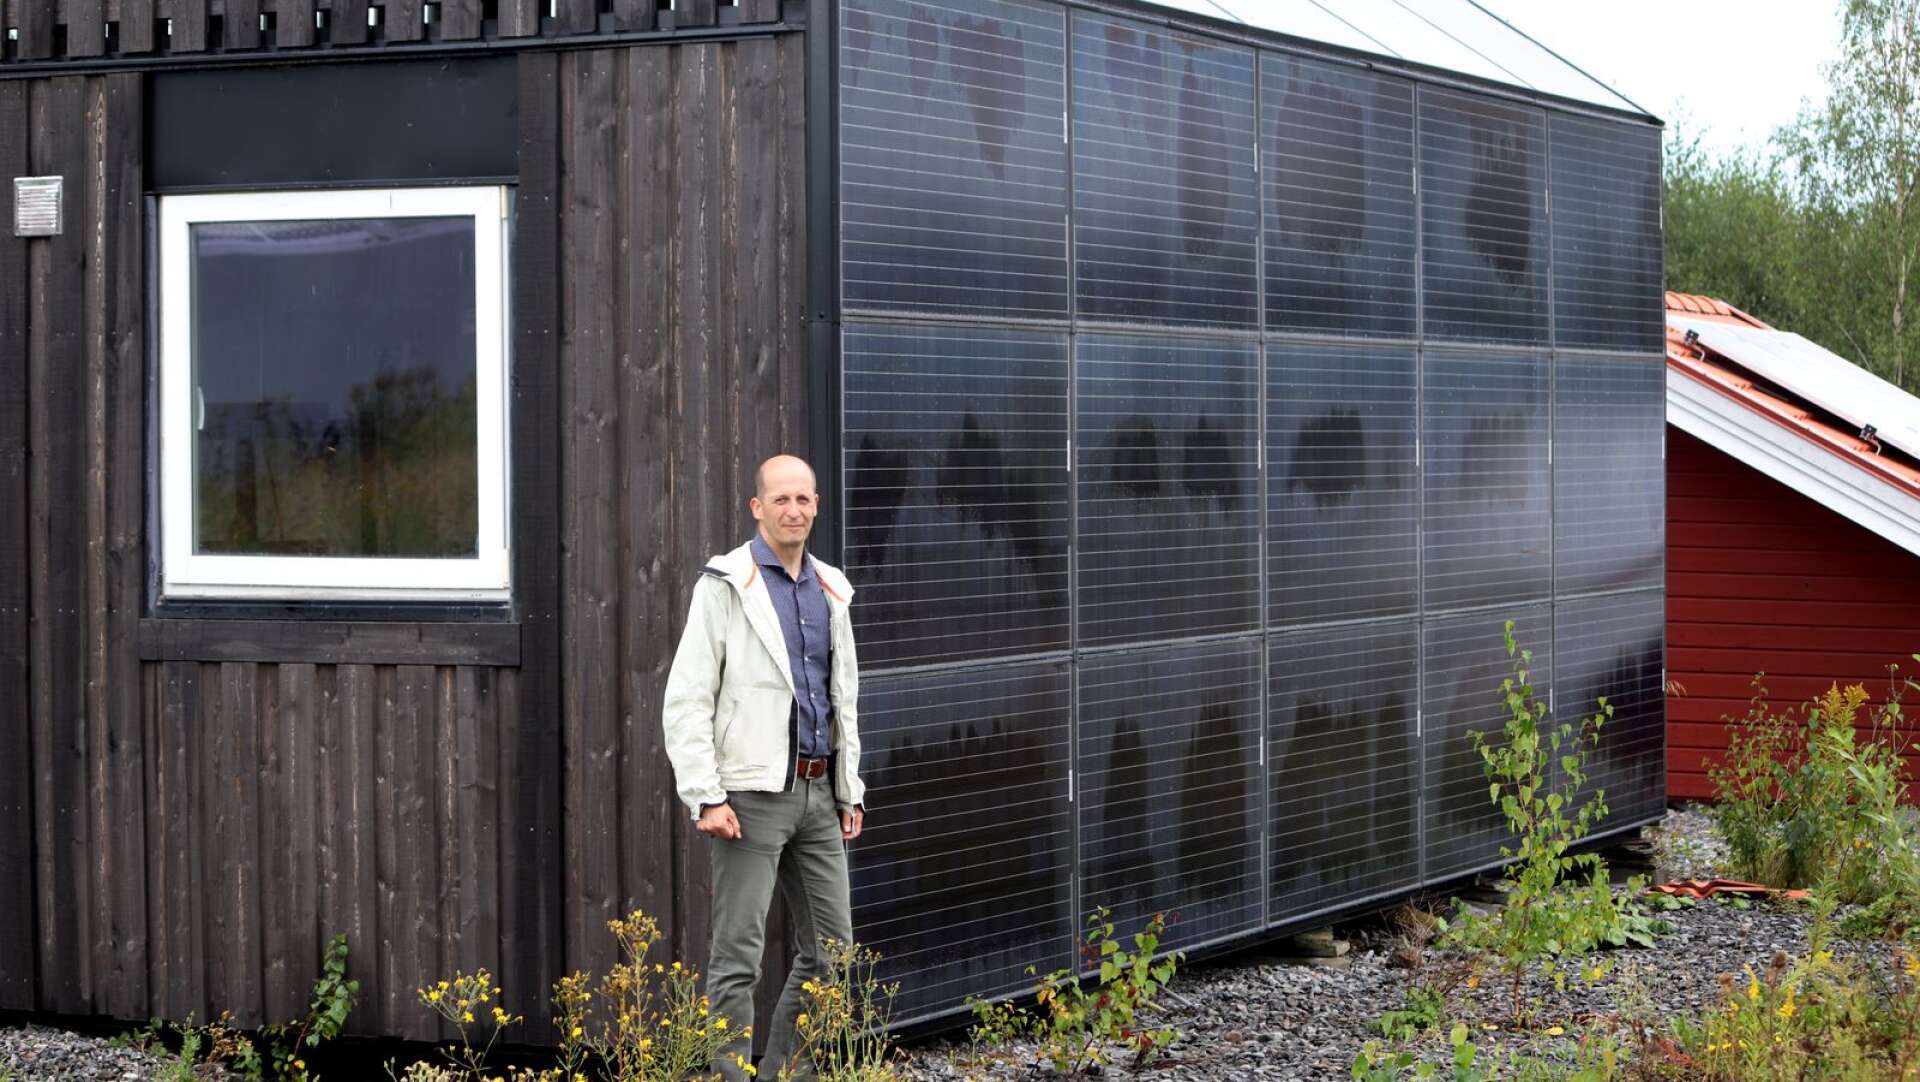 En husvägg klädd med solcellspanel. Det är en av många energilösning som provas vid Glava energy center.